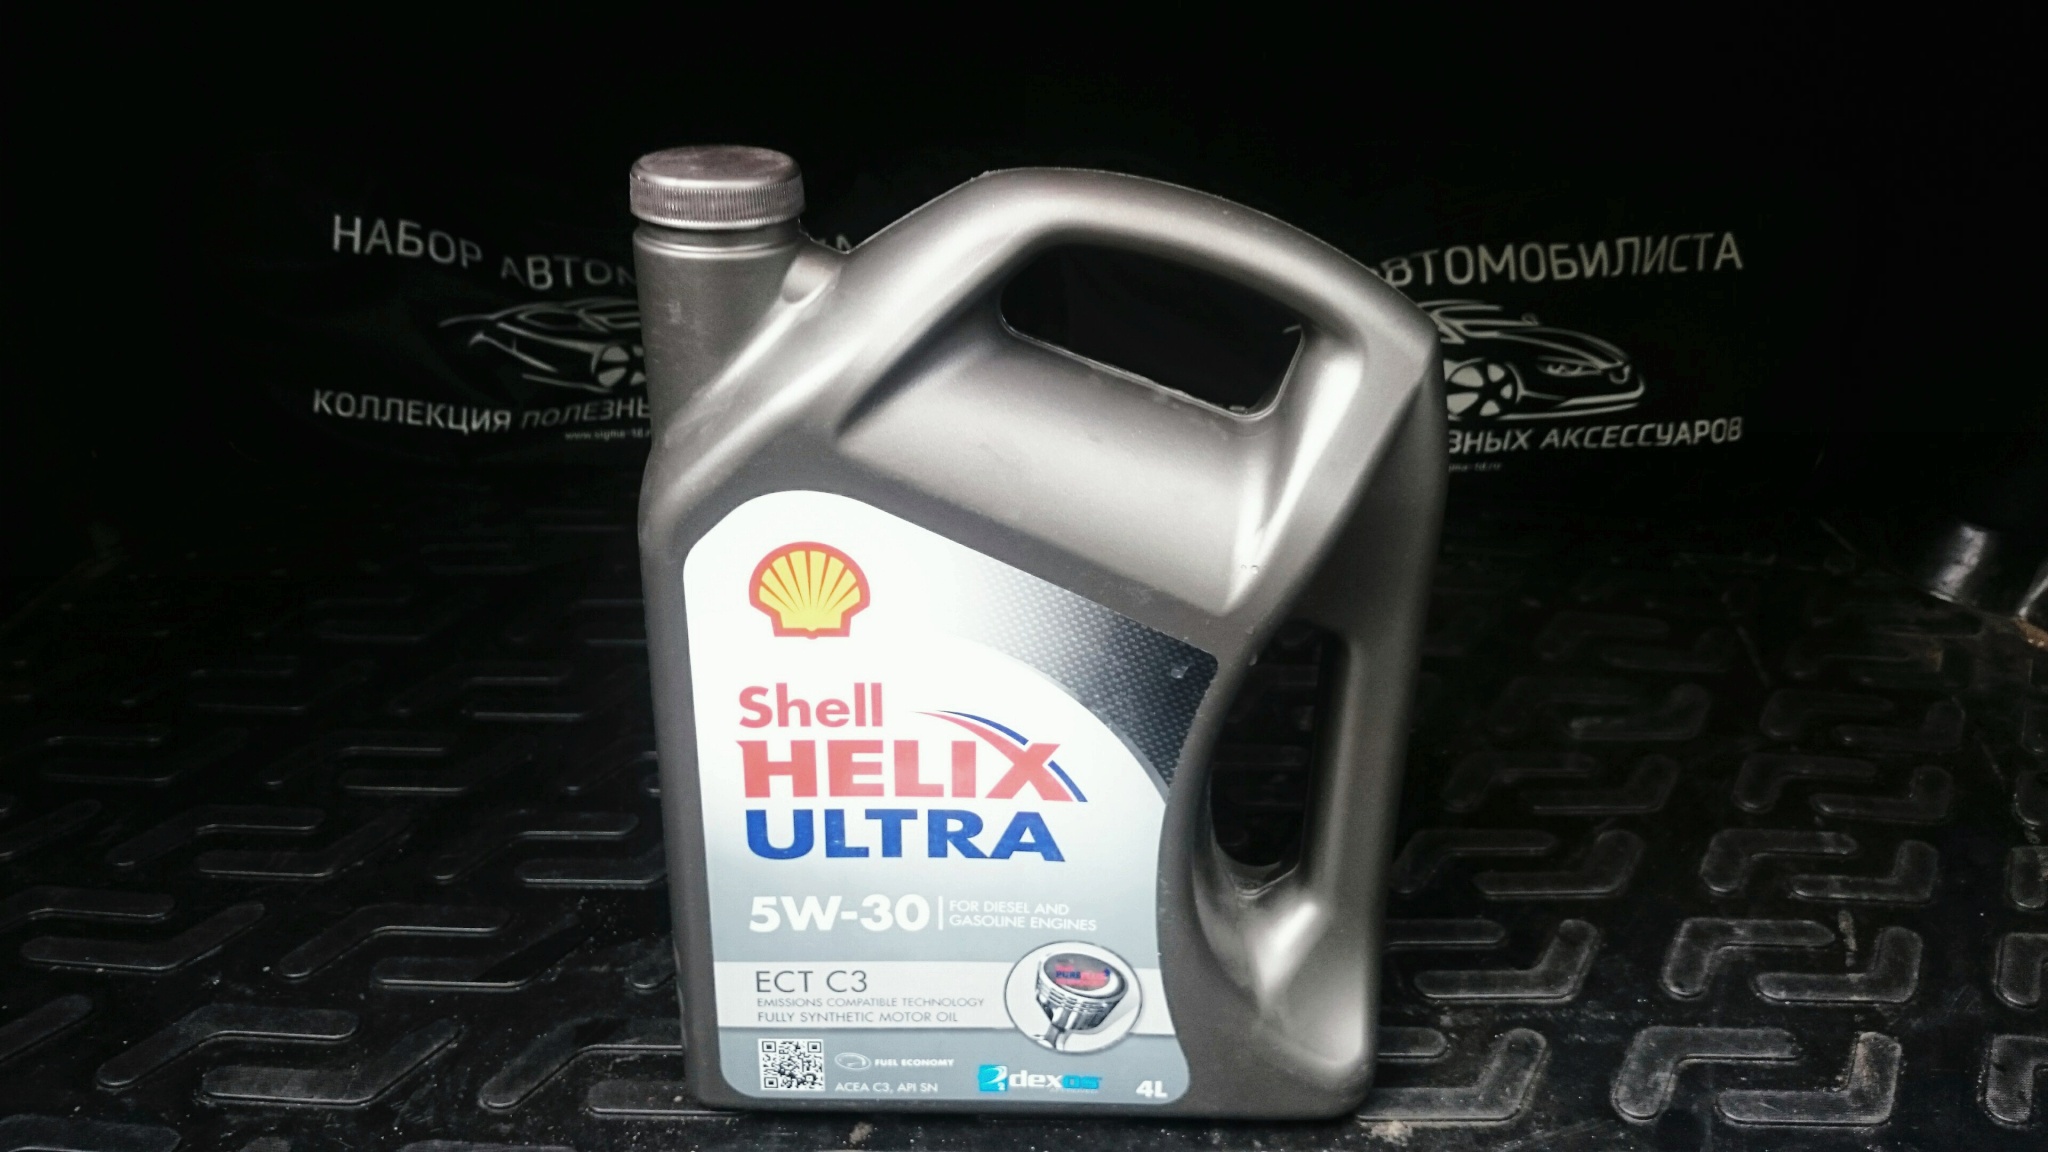 Shell Helix Ultra ect c3 5w-30 4 л. Helix Ultra ect c3 5w-30. Shell Helix Ultra ect 5w30 c3. Shell Helix Ultra ect c3 5w30 200 литров. Масло shell helix ect 5w30